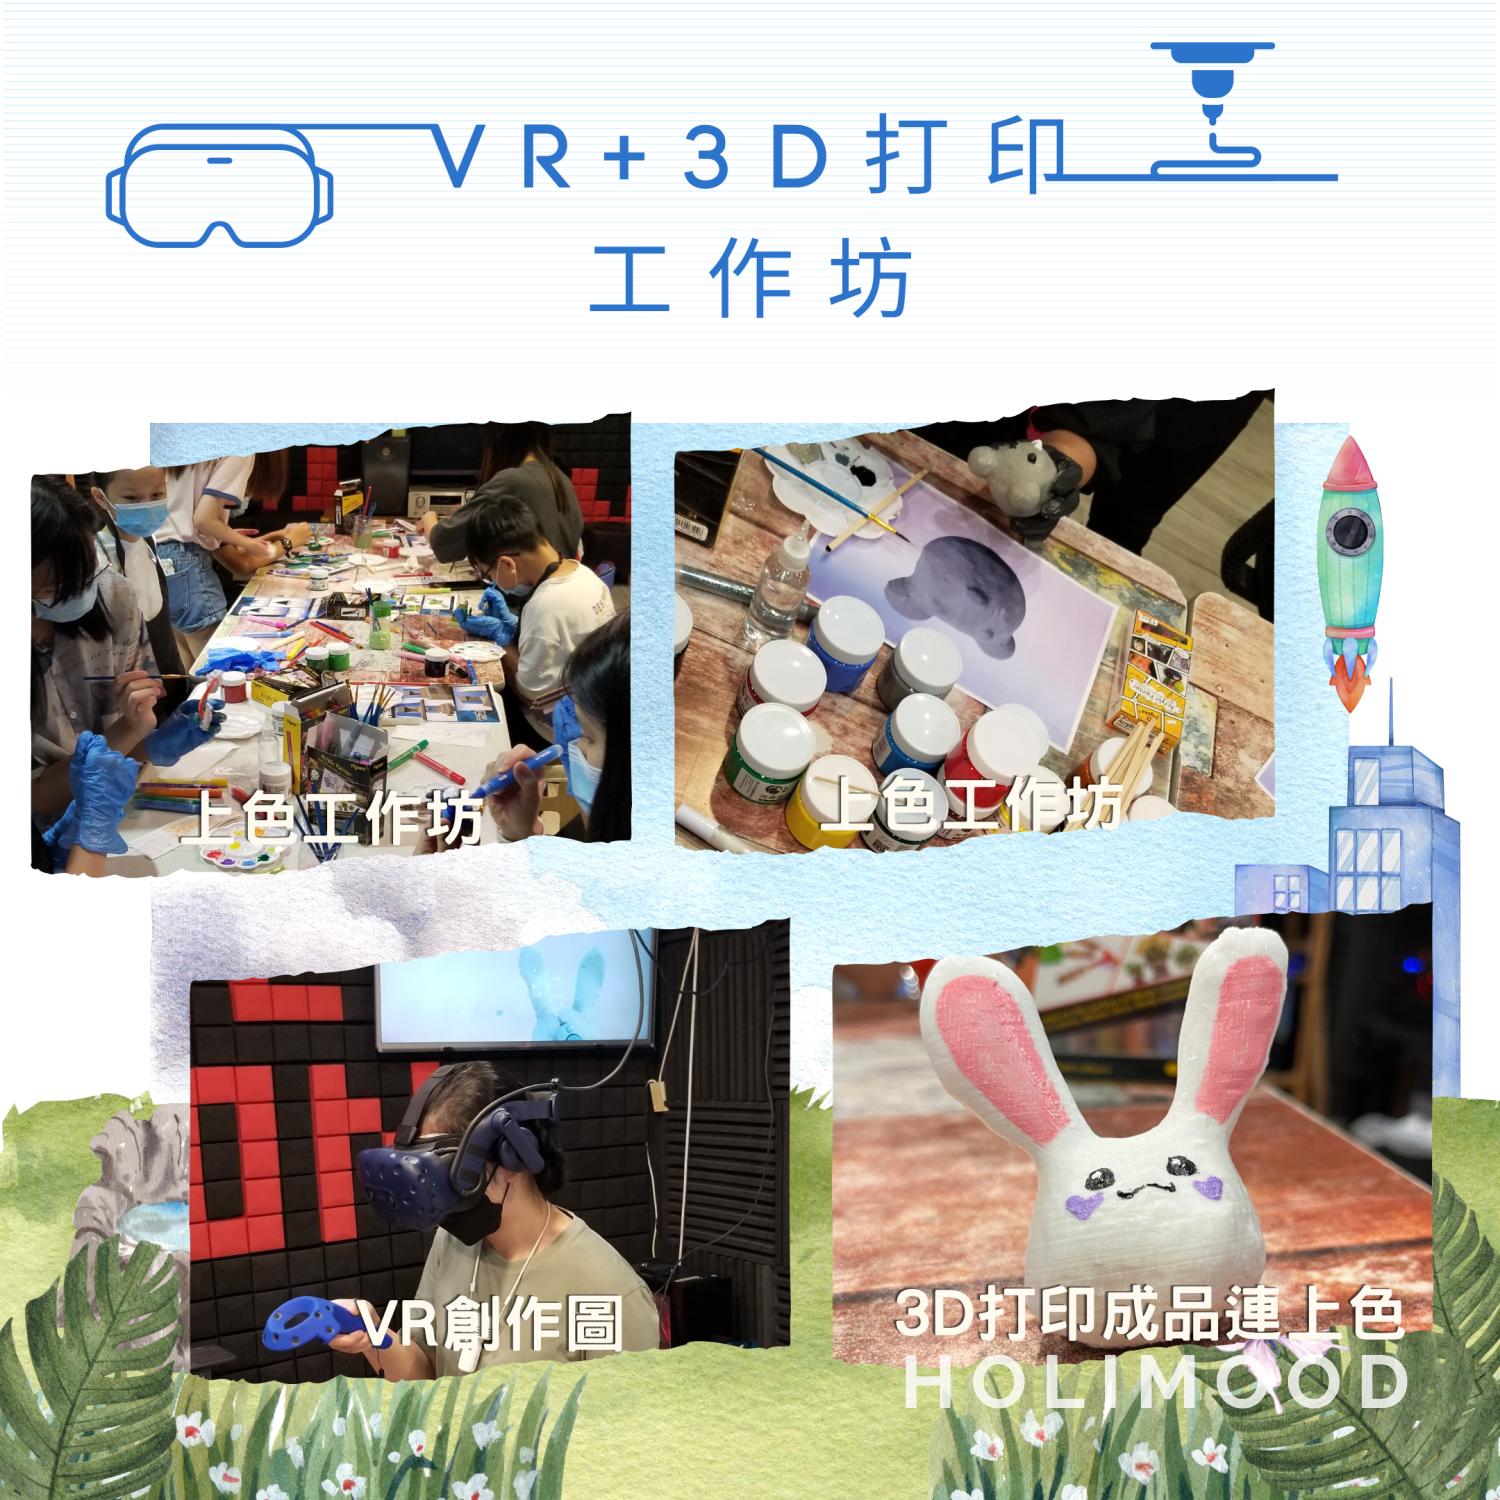 V-Owl Station VR Party 虛擬實境體驗站 VR+3D打印工作坊 7